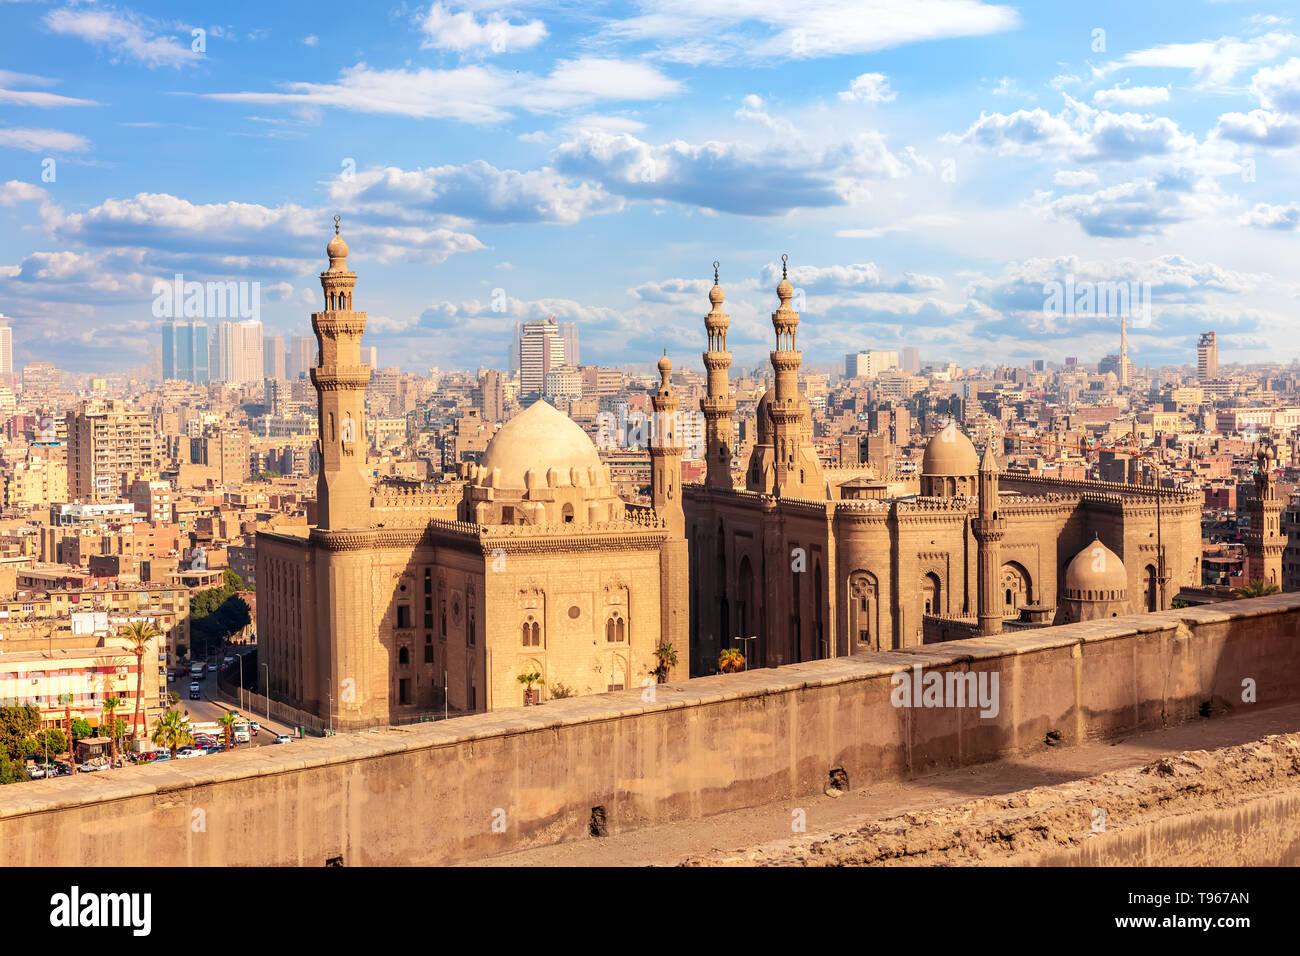 Vue sur le Mosque-Madrassa du Sultan Hassan, Le Caire, Egypte Banque D'Images